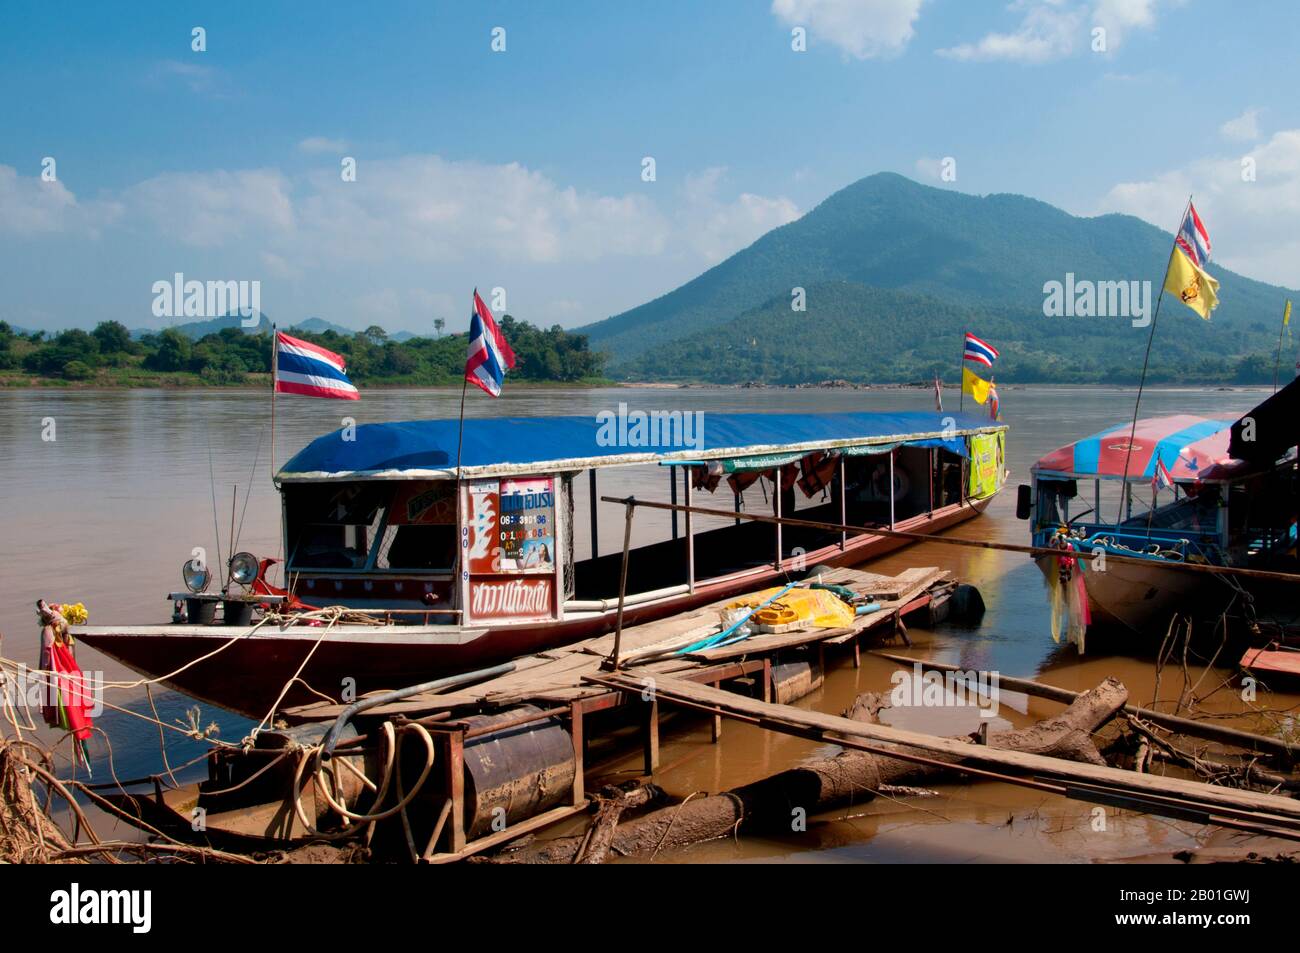 Thailandia: Barche ormeggiate sul fiume Mekong a Kaeng Khut kHU, provincia di Loei. La provincia di Loei (Thai: เลย) si trova nella parte superiore del nord-est della Thailandia. Le province limitrofe sono (da est in senso orario) Nong Khai, Udon Thani, Nongbua Lamphu, Khon Kaen, Phetchabun, Phitsanulok. A nord confina con le province di Xaignabouli e Vientiane del Laos. La provincia è coperta da basse montagne, mentre la capitale Loei si trova in un bacino fertile. Il fiume Loei, che scorre attraverso la provincia, è un affluente del Mekong. Foto Stock